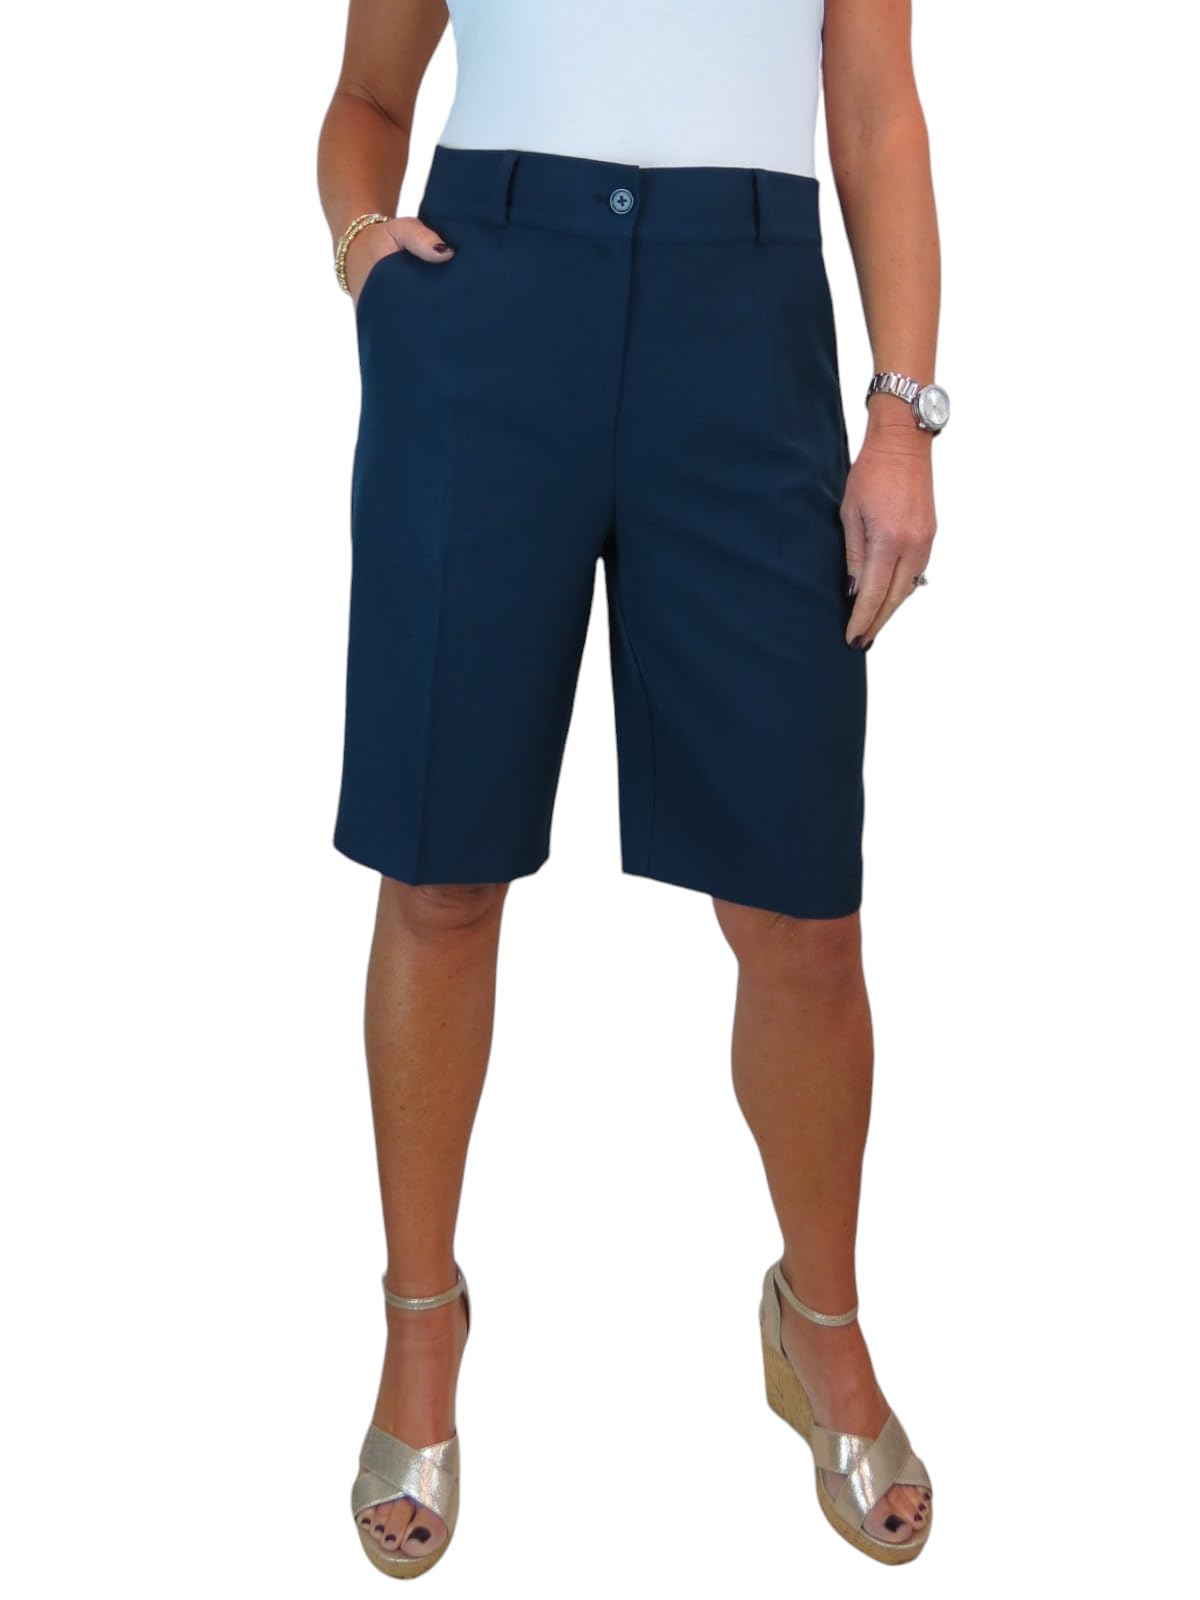 ICE Damen Smart Casual Shorts Waschbar Tailored Marine-Blau 34-48 (38)